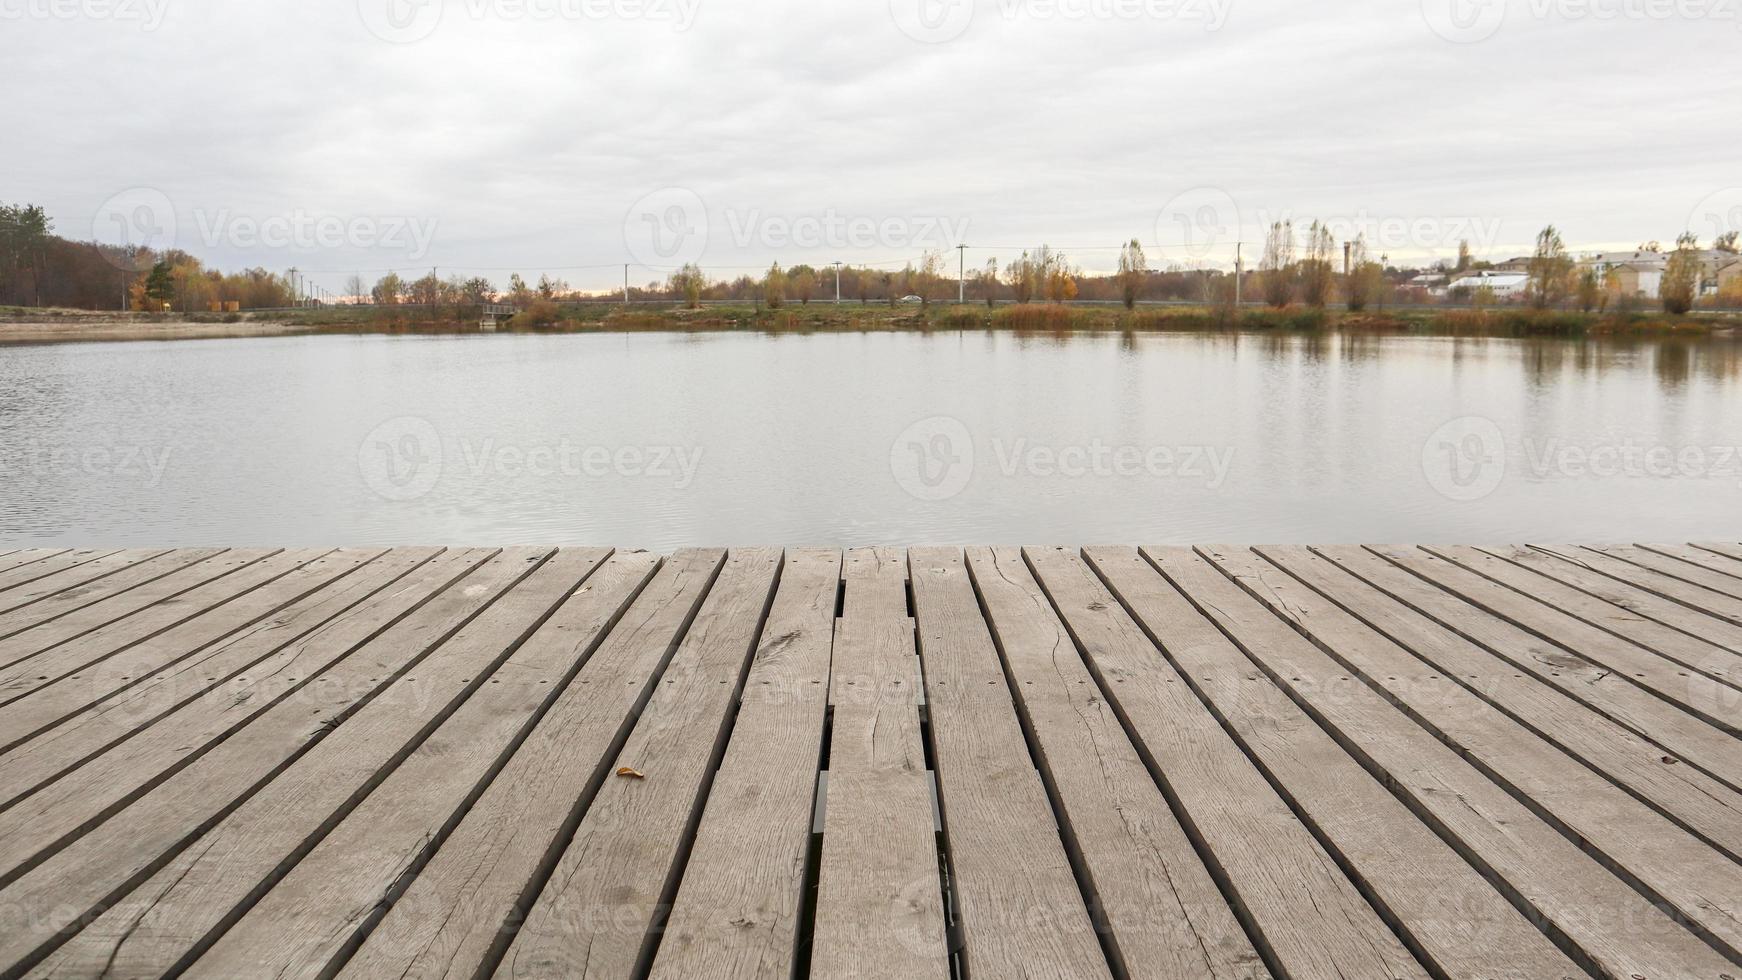 een kleine houten pier op een rustig meer in de mistige herfstochtend. foto